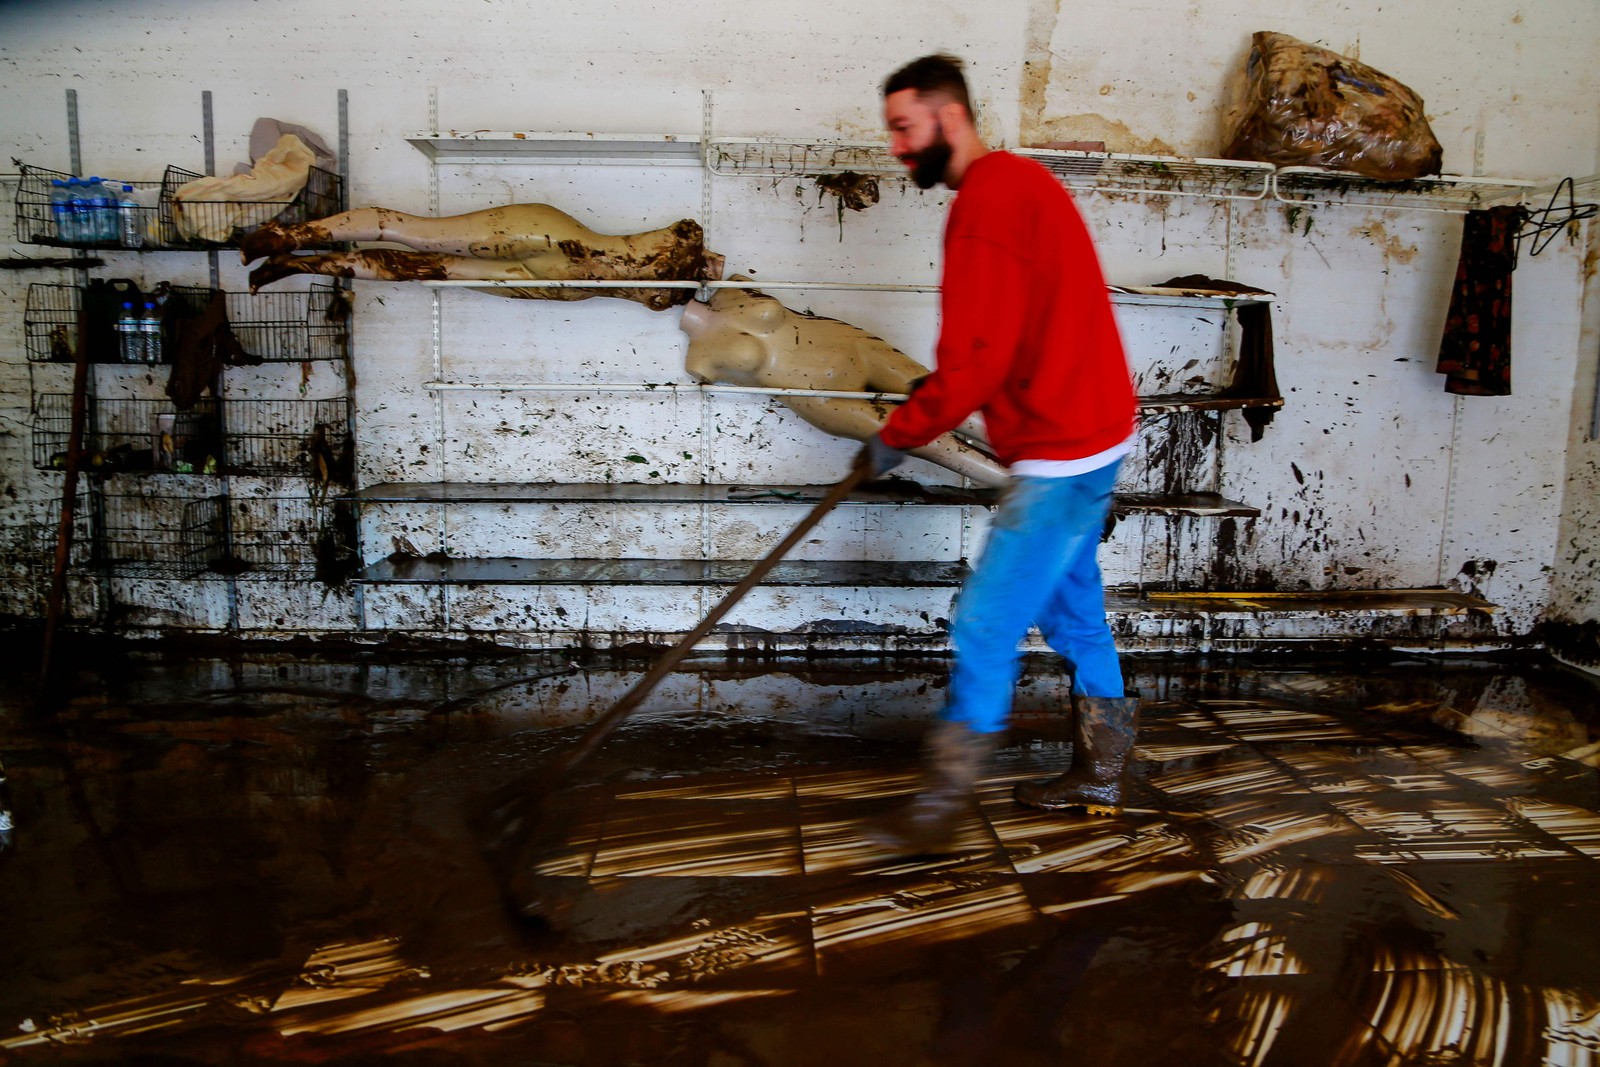 Um homem limpa o interior de uma loja após um ciclone em Muçum, Rio Grande do Sul, Brasil — Foto: SILVIO ÁVILA/AFP